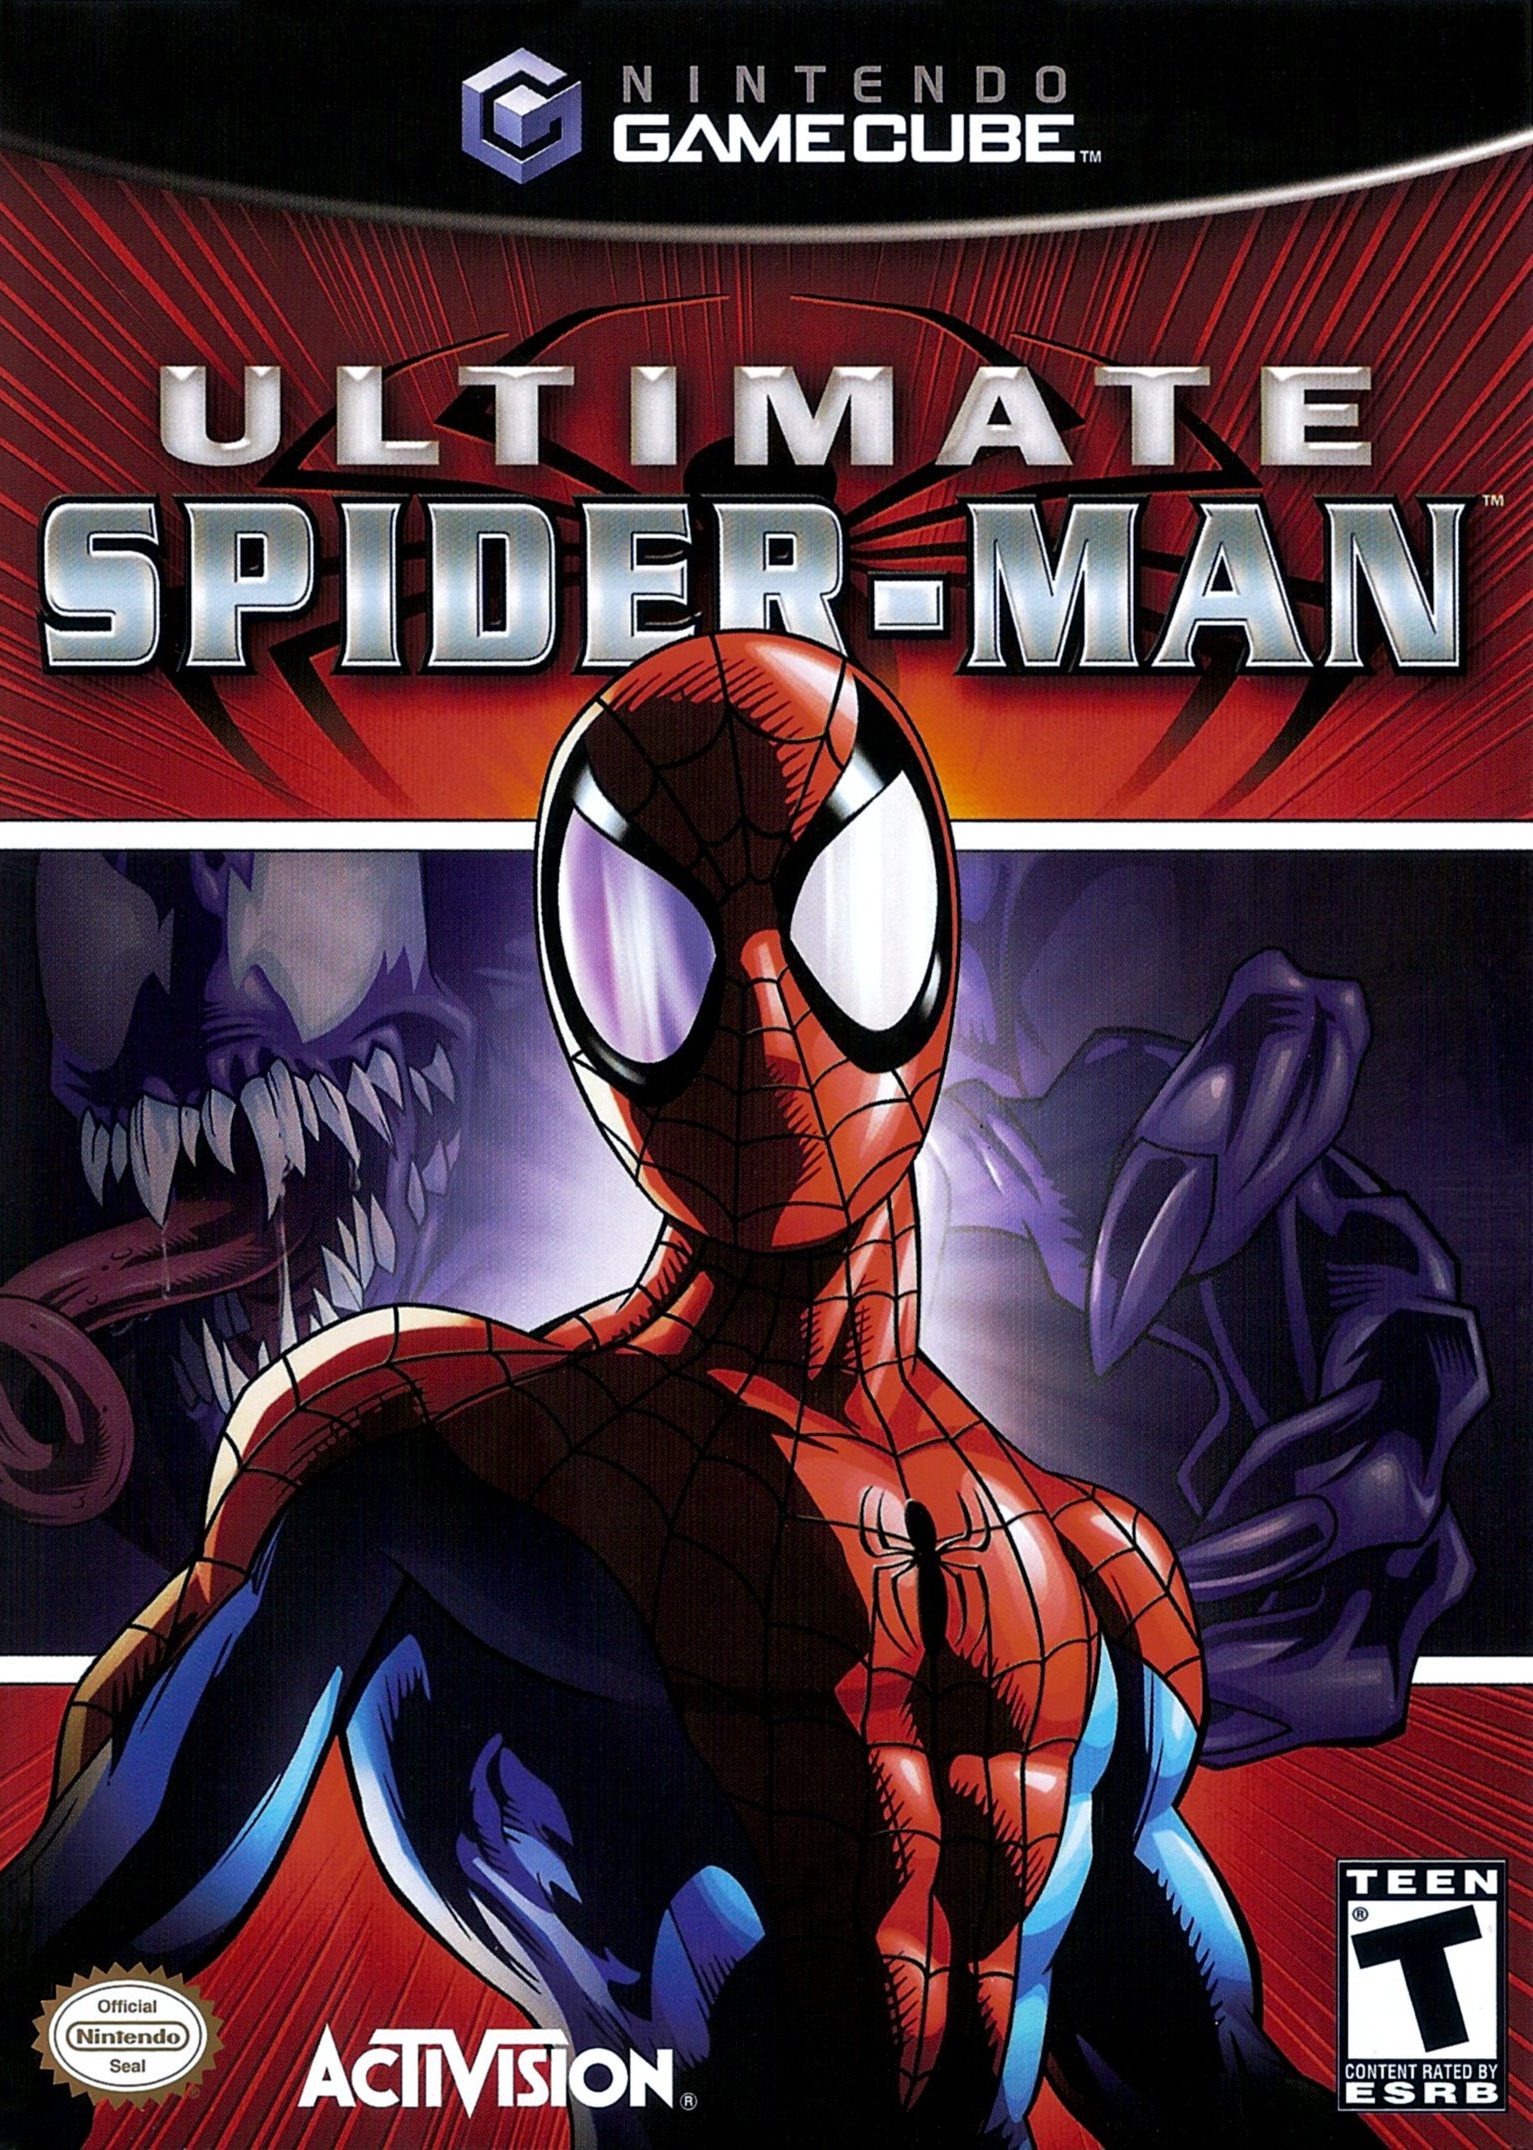 Ultimate Spider-Man/GameCube